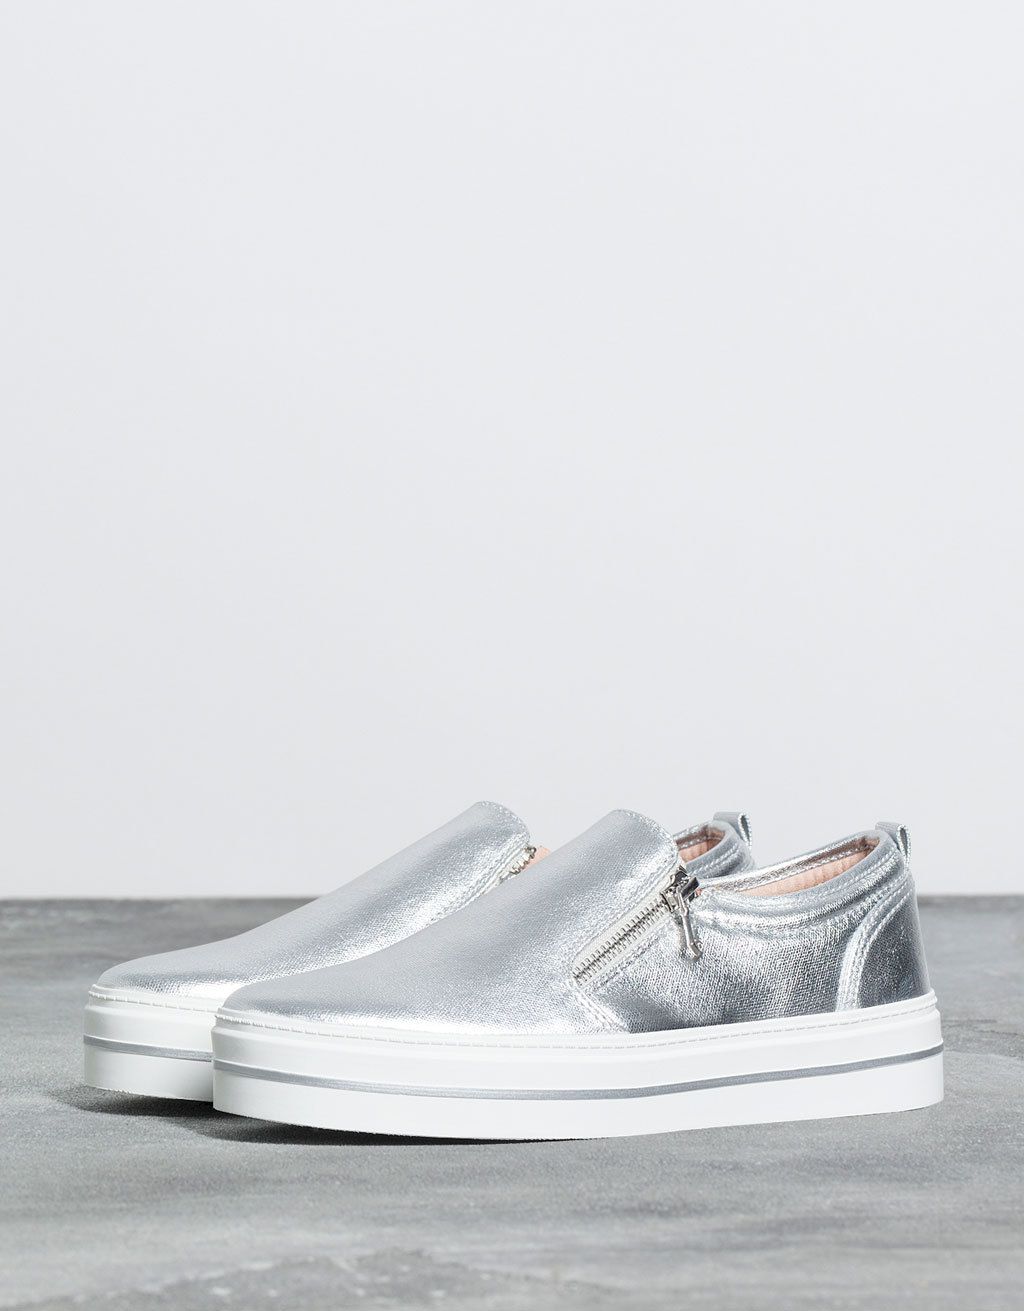 Bershka ezüst színű cipáros belebújós cipő fotója